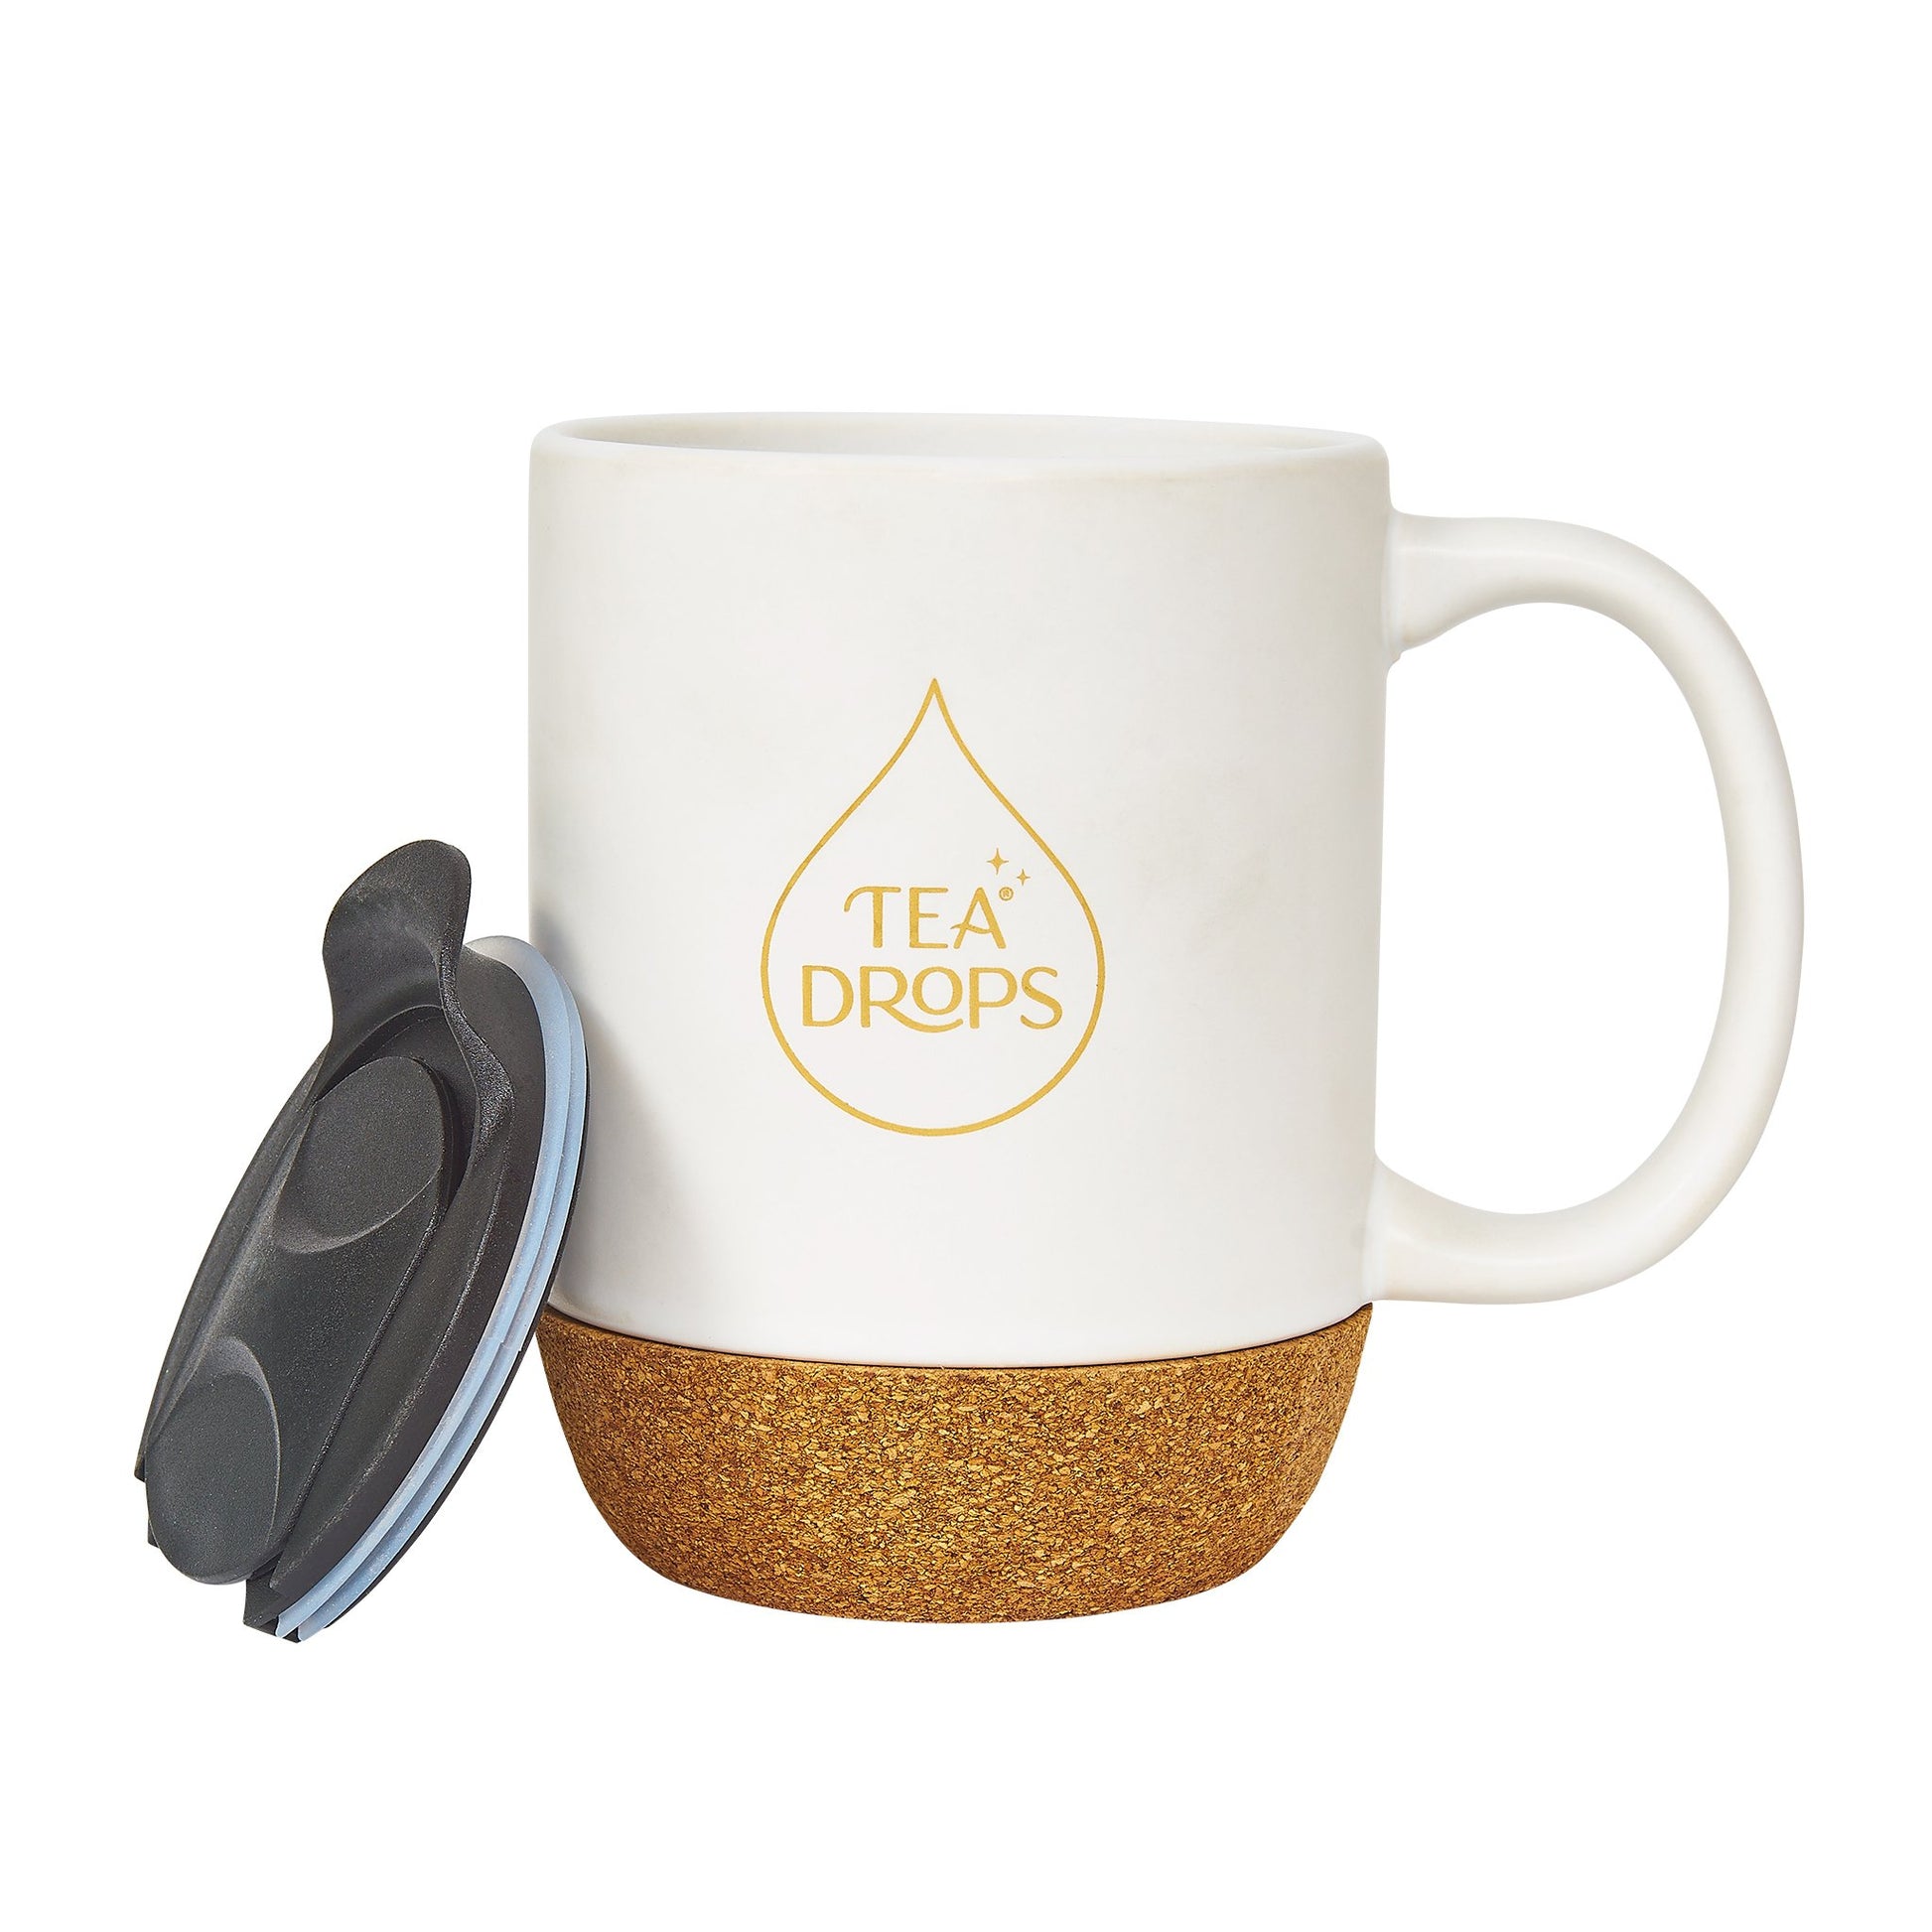 https://www.myteadrop.com/cdn/shop/products/tea-drops-new-tea-drops-ceramic-mug-with-lid-tea-drops-ceramic-tea-mug-with-lid-12oz-29921982775343.jpg?v=1627989719&width=1946